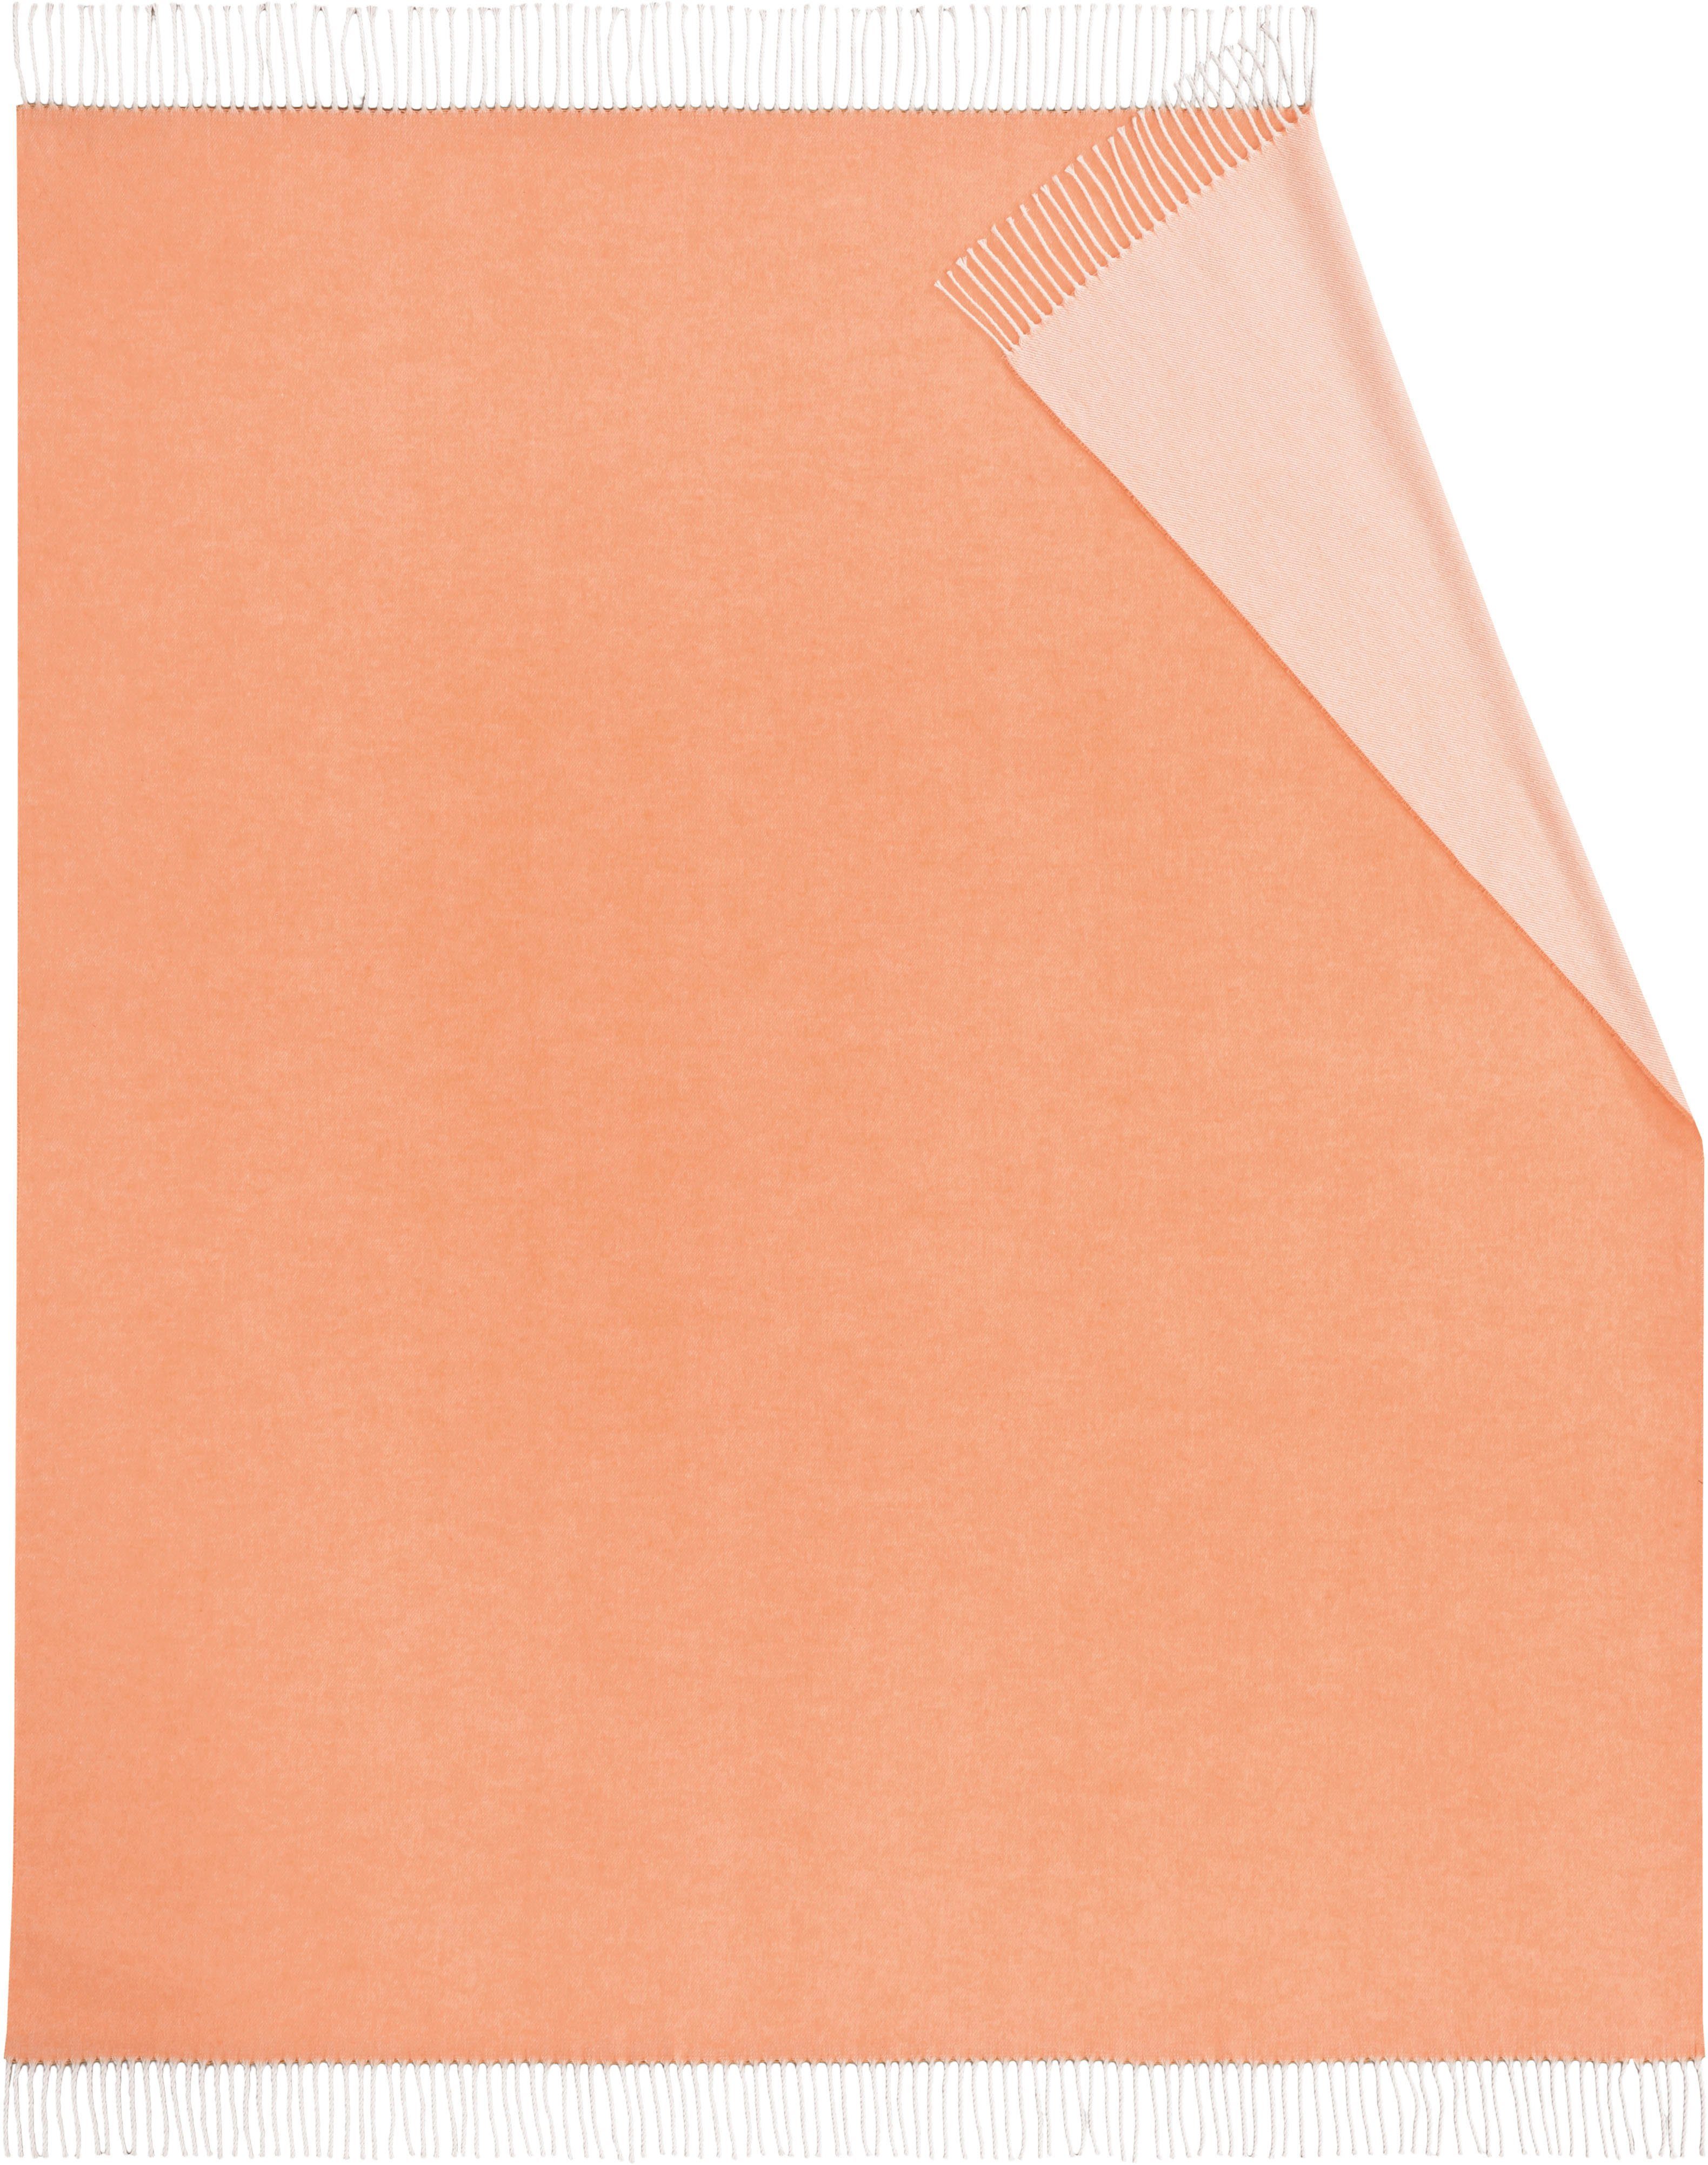 Plaid Twill, Biederlack, mit frischen Uni-Farben, orange Kuscheldecke